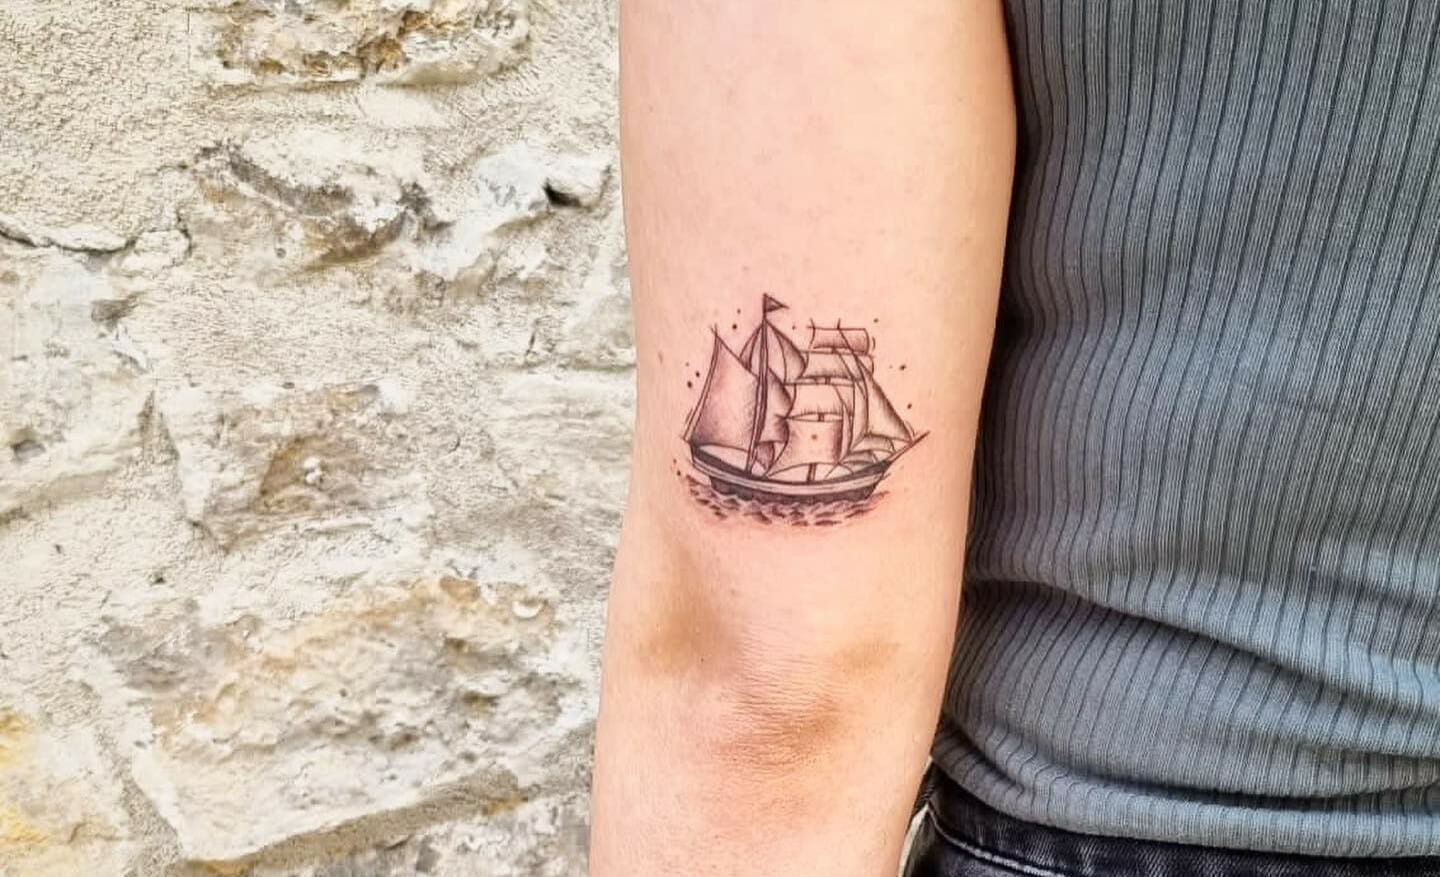 Skunx Tattoo - Tiny ship by @milanli 😊 . . #tattoo #tattoos #tattooing  #tattooartist #delicatetattoo #finetattoo #london #londontattoo #art  #fineart #artist #delicatetattoos #finelinetattoo #lineworktattoo  #veganfriendl | Facebook